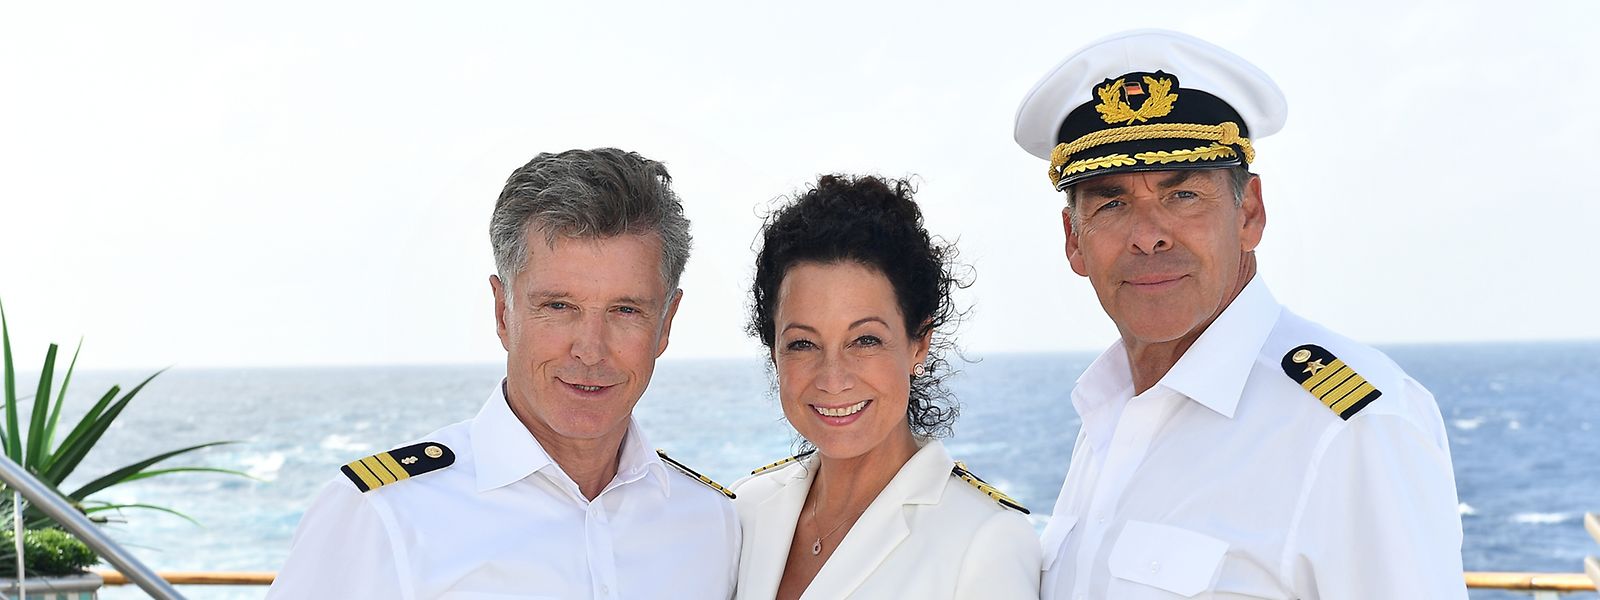 







Kapitän Viktor Burger (Sascha Hehn, r.) verlässt das Schiff. An Bord bleiben Hoteldirektorin Hanna Liebhold (Barbara Wussow) und Schiffsarzt Dr. Wolf Sander (Nick Wilder).